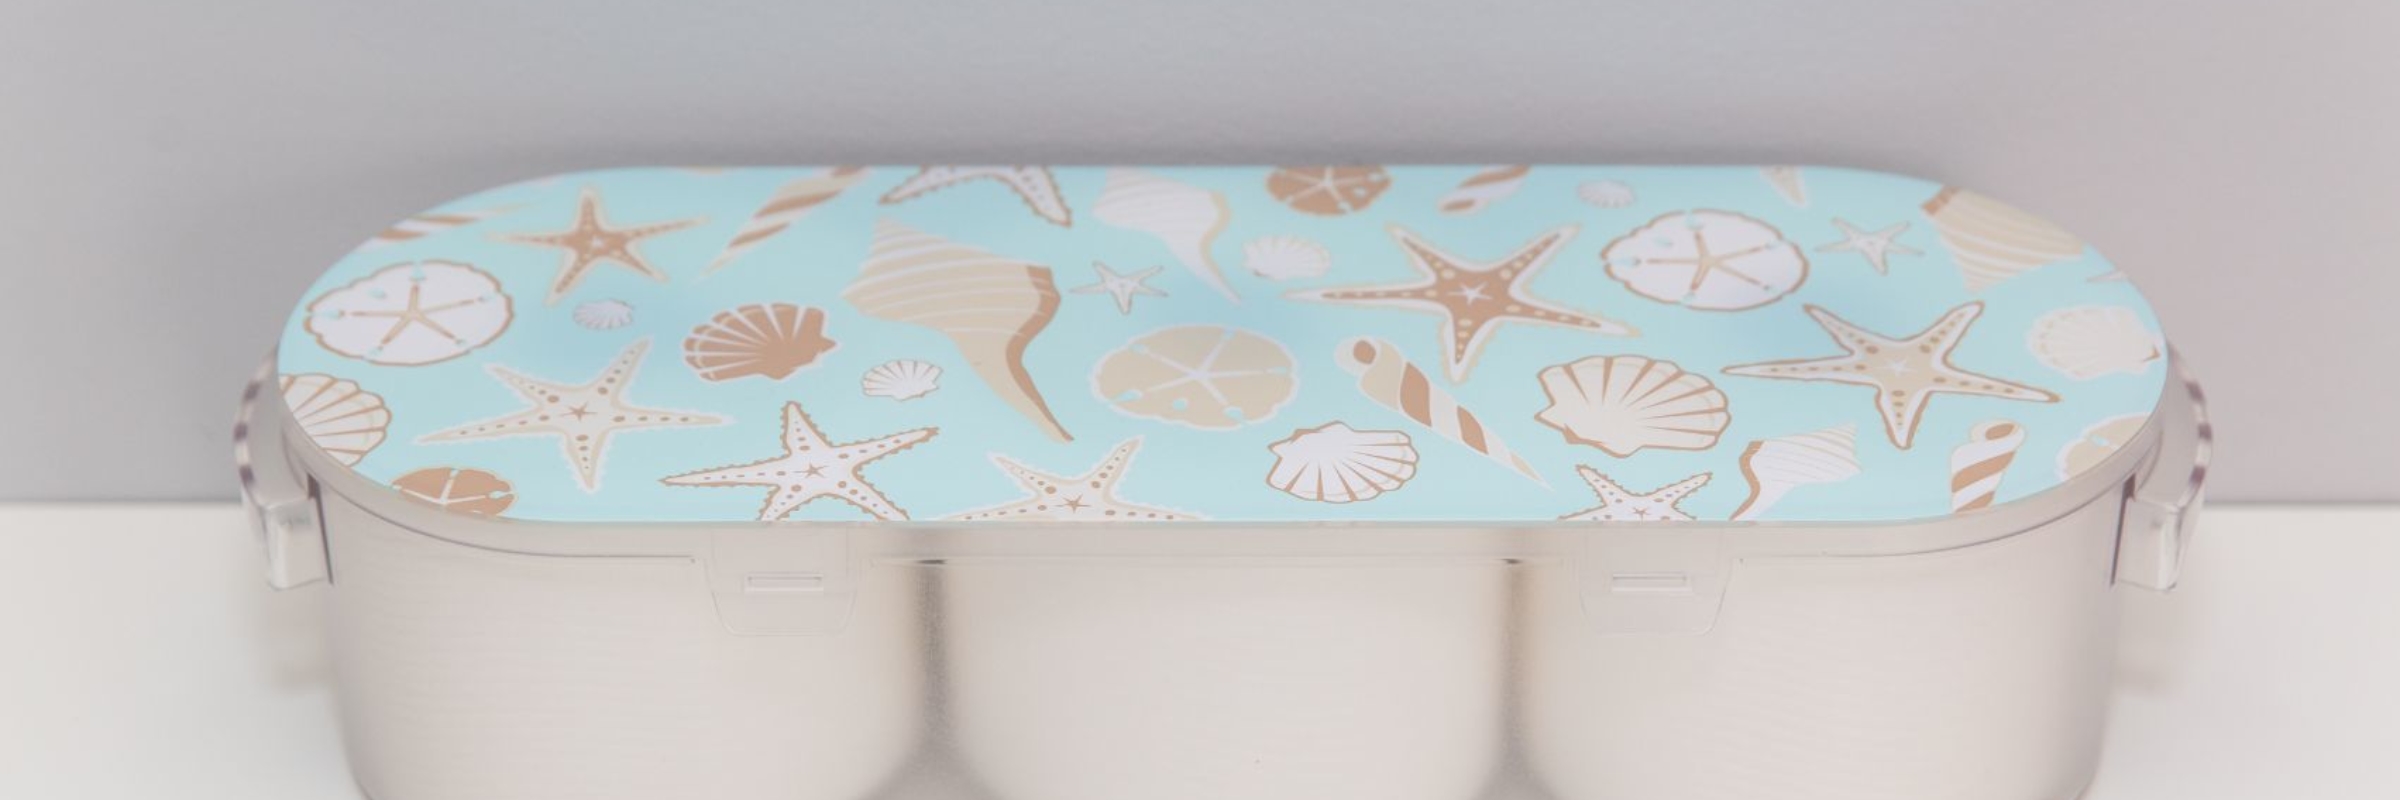 Nykia Designs - Koribox for Toilet Paper Storage